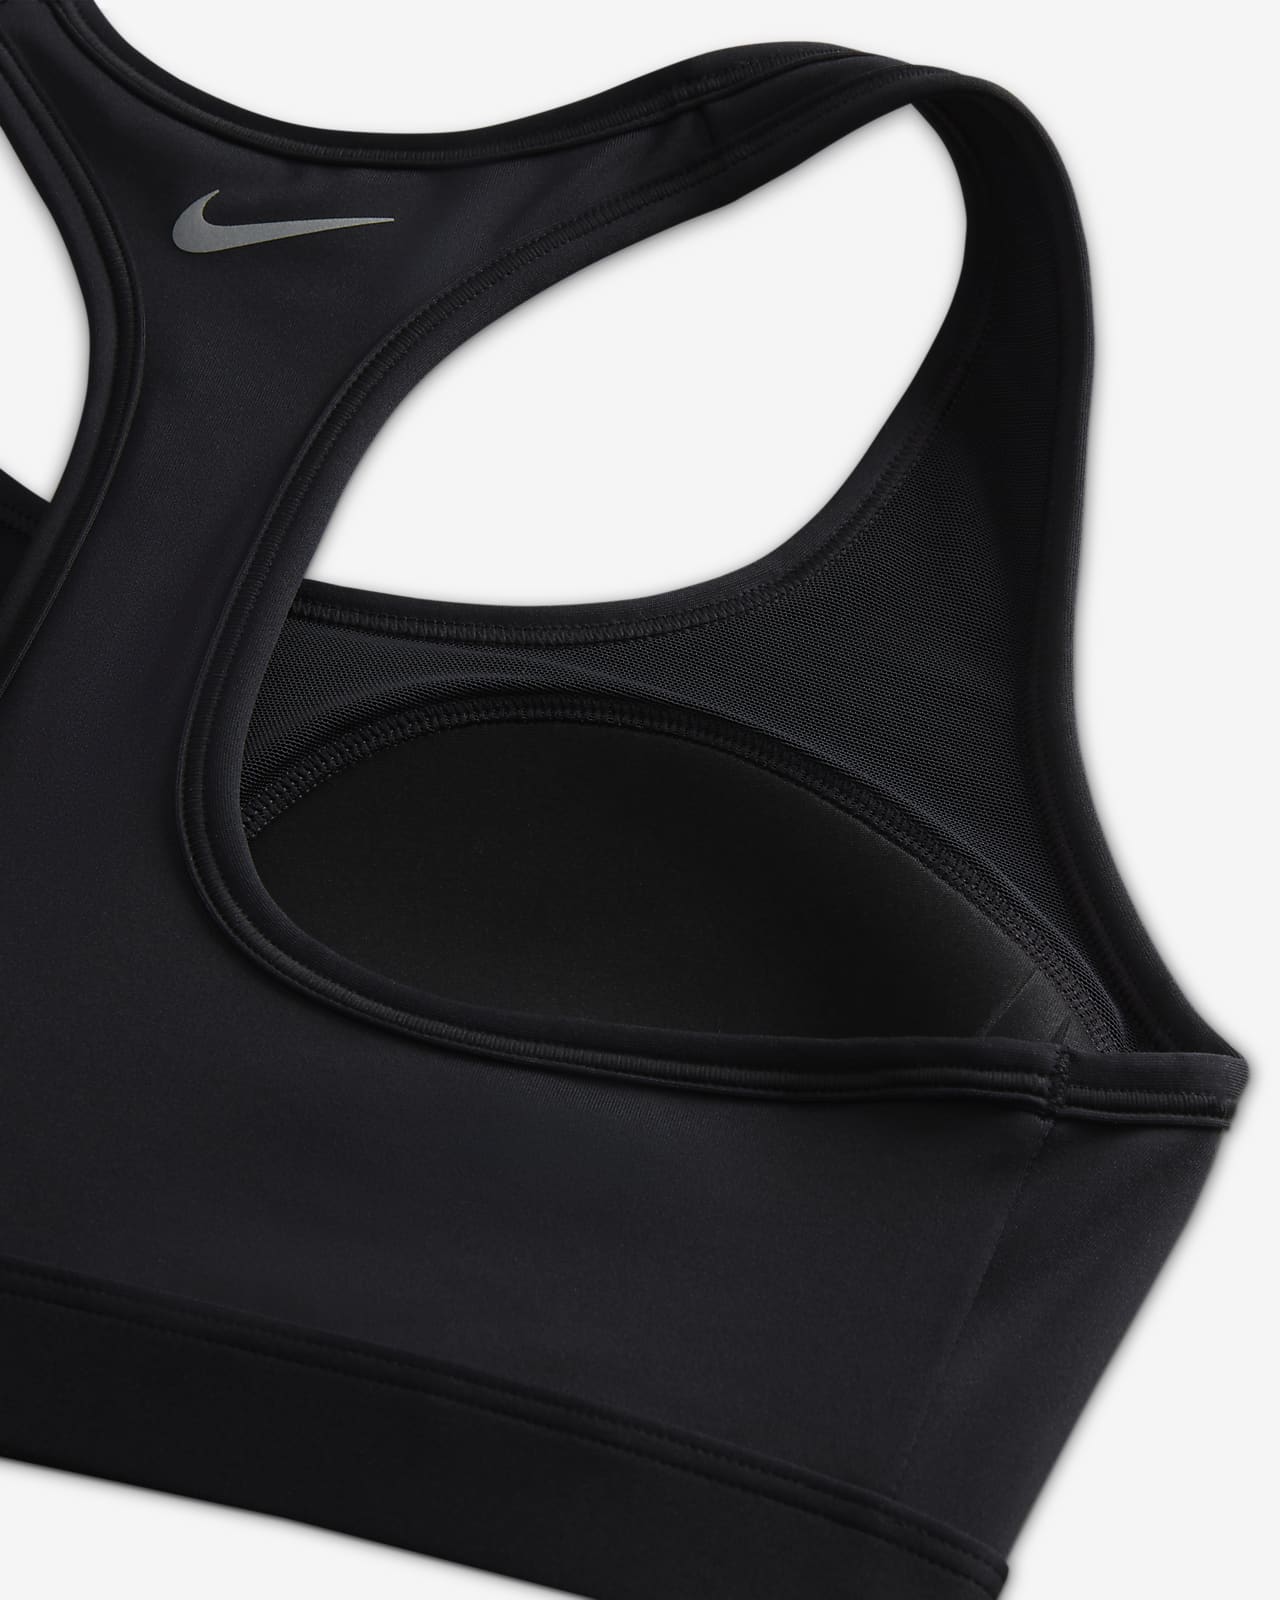 Nike Swoosh Medium-Support Women's Padded Graphic Sports Bra. Nike LU